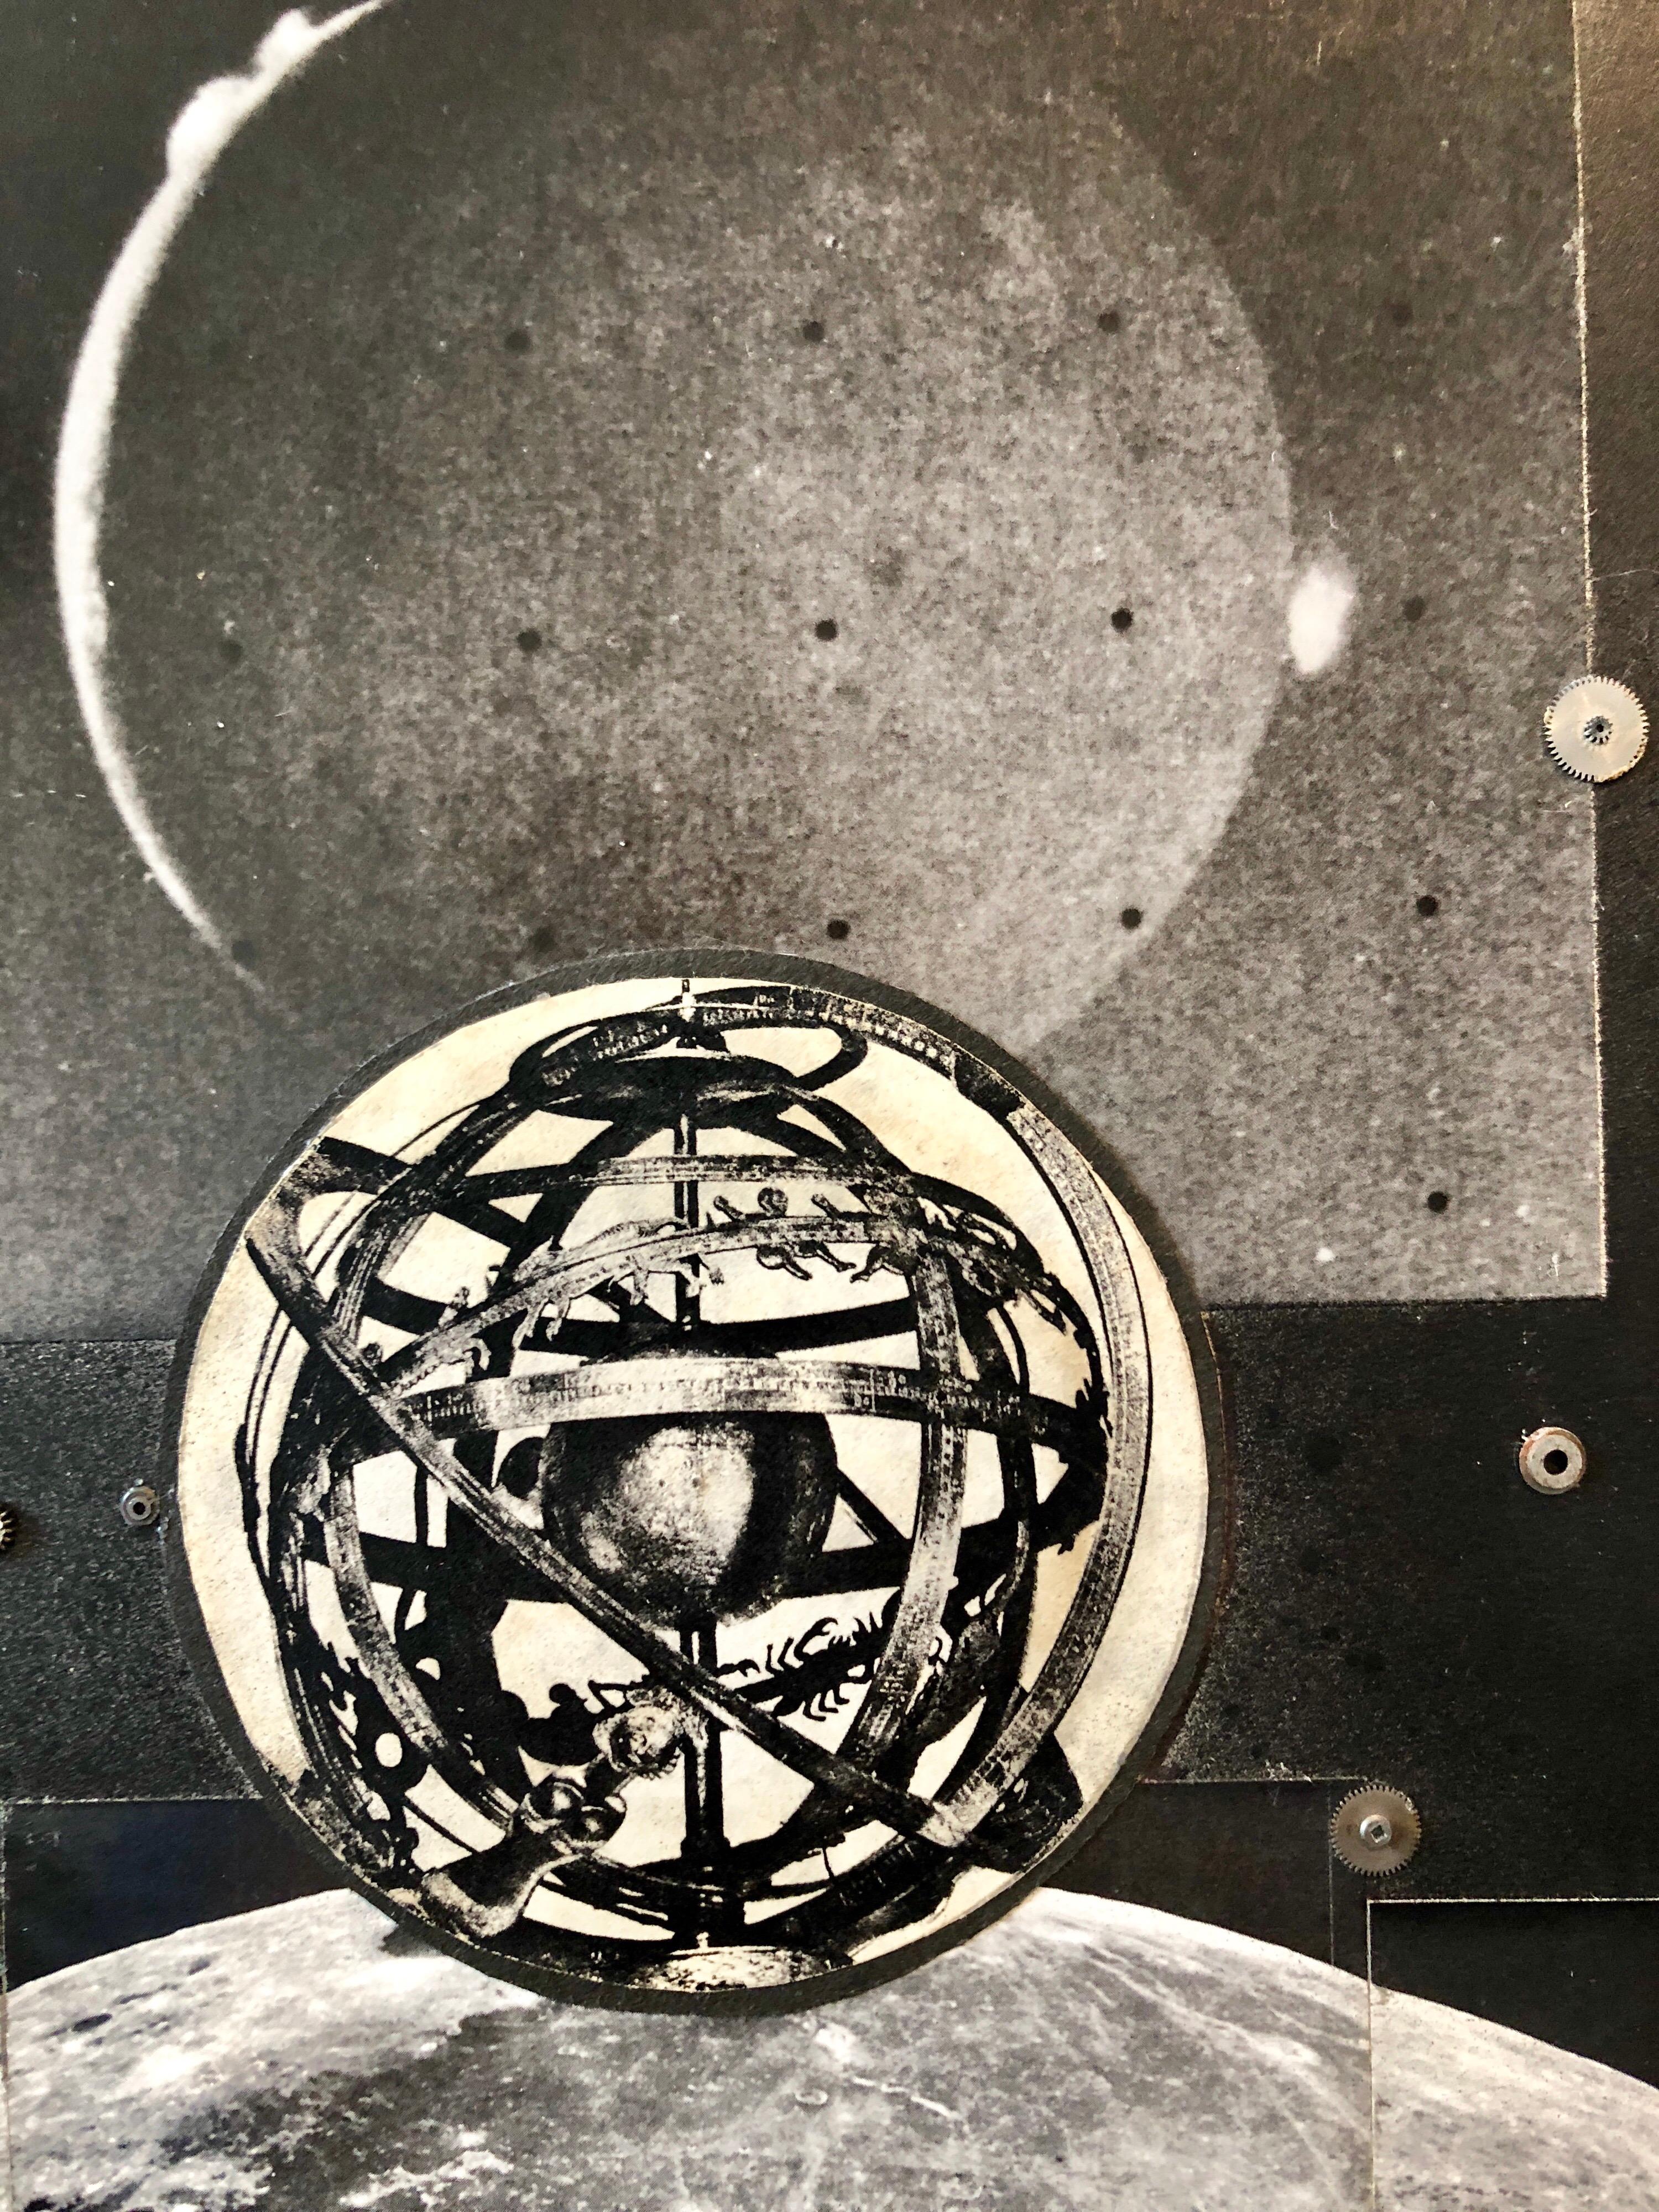 Josias Astronomical Clock Watch Parts Assemblage Photo Planet Collage Photograph - Black Landscape Photograph by Vera Simons